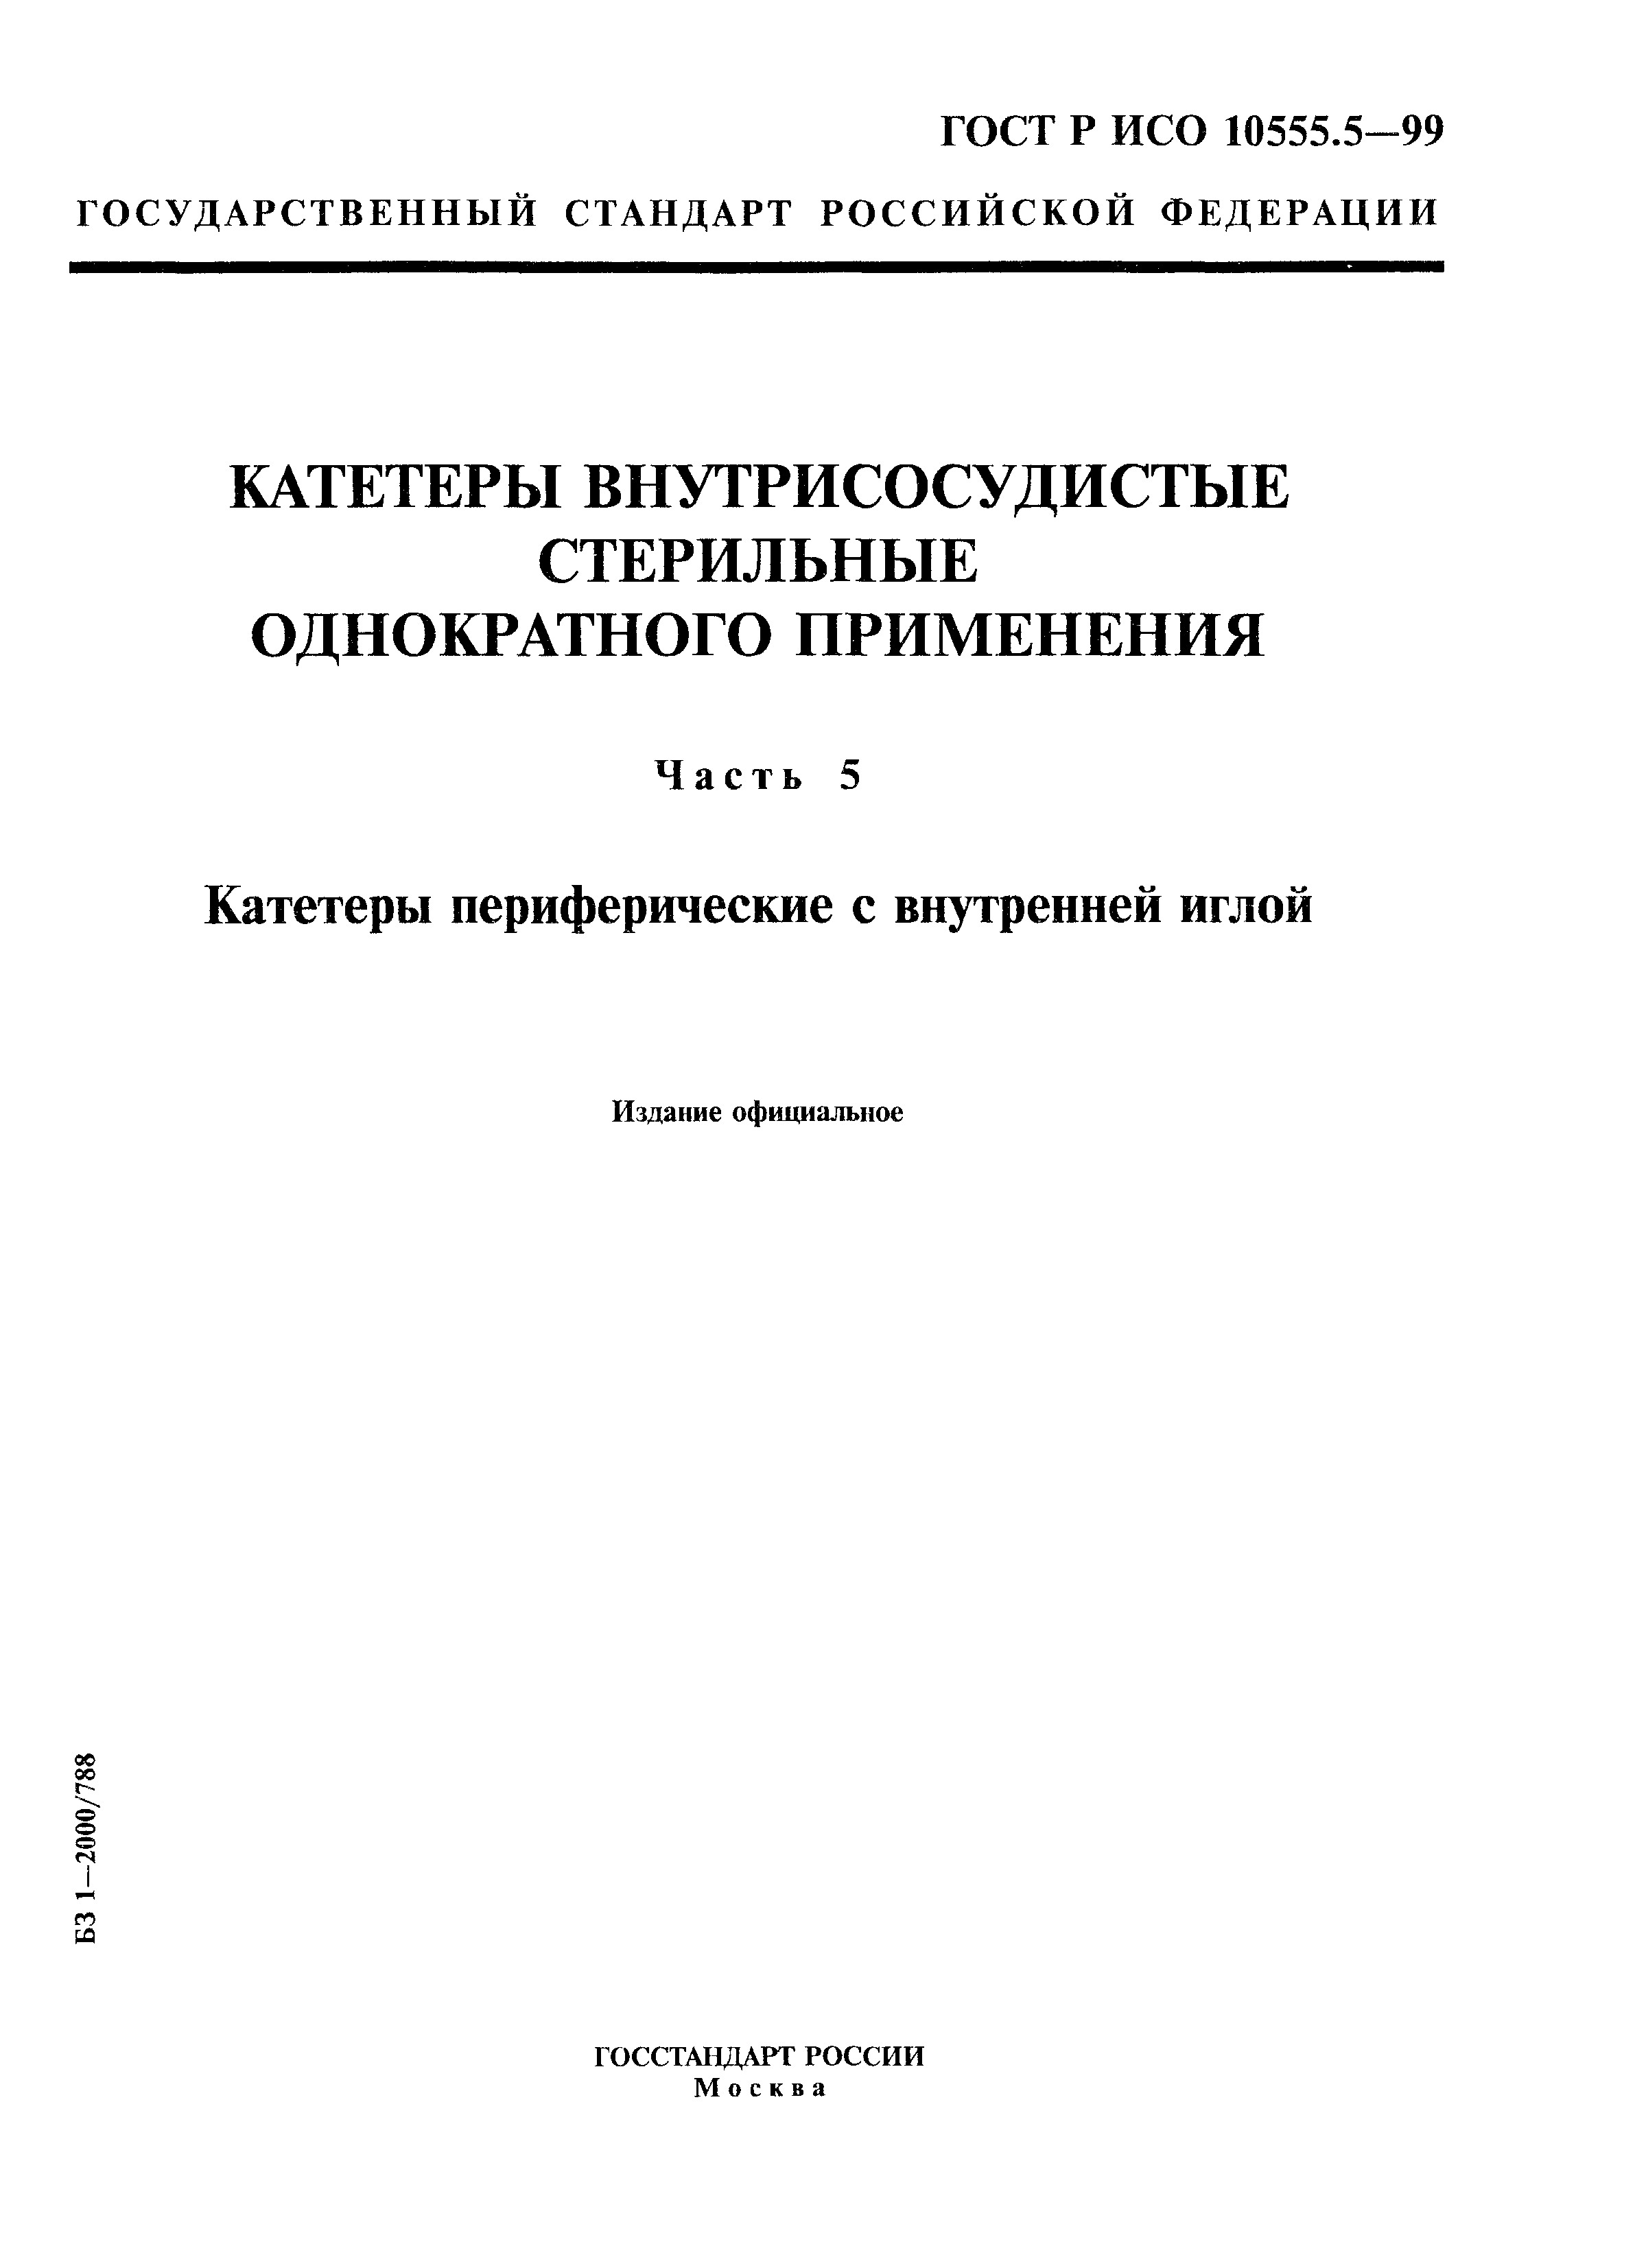 ГОСТ Р ИСО 10555.5-99